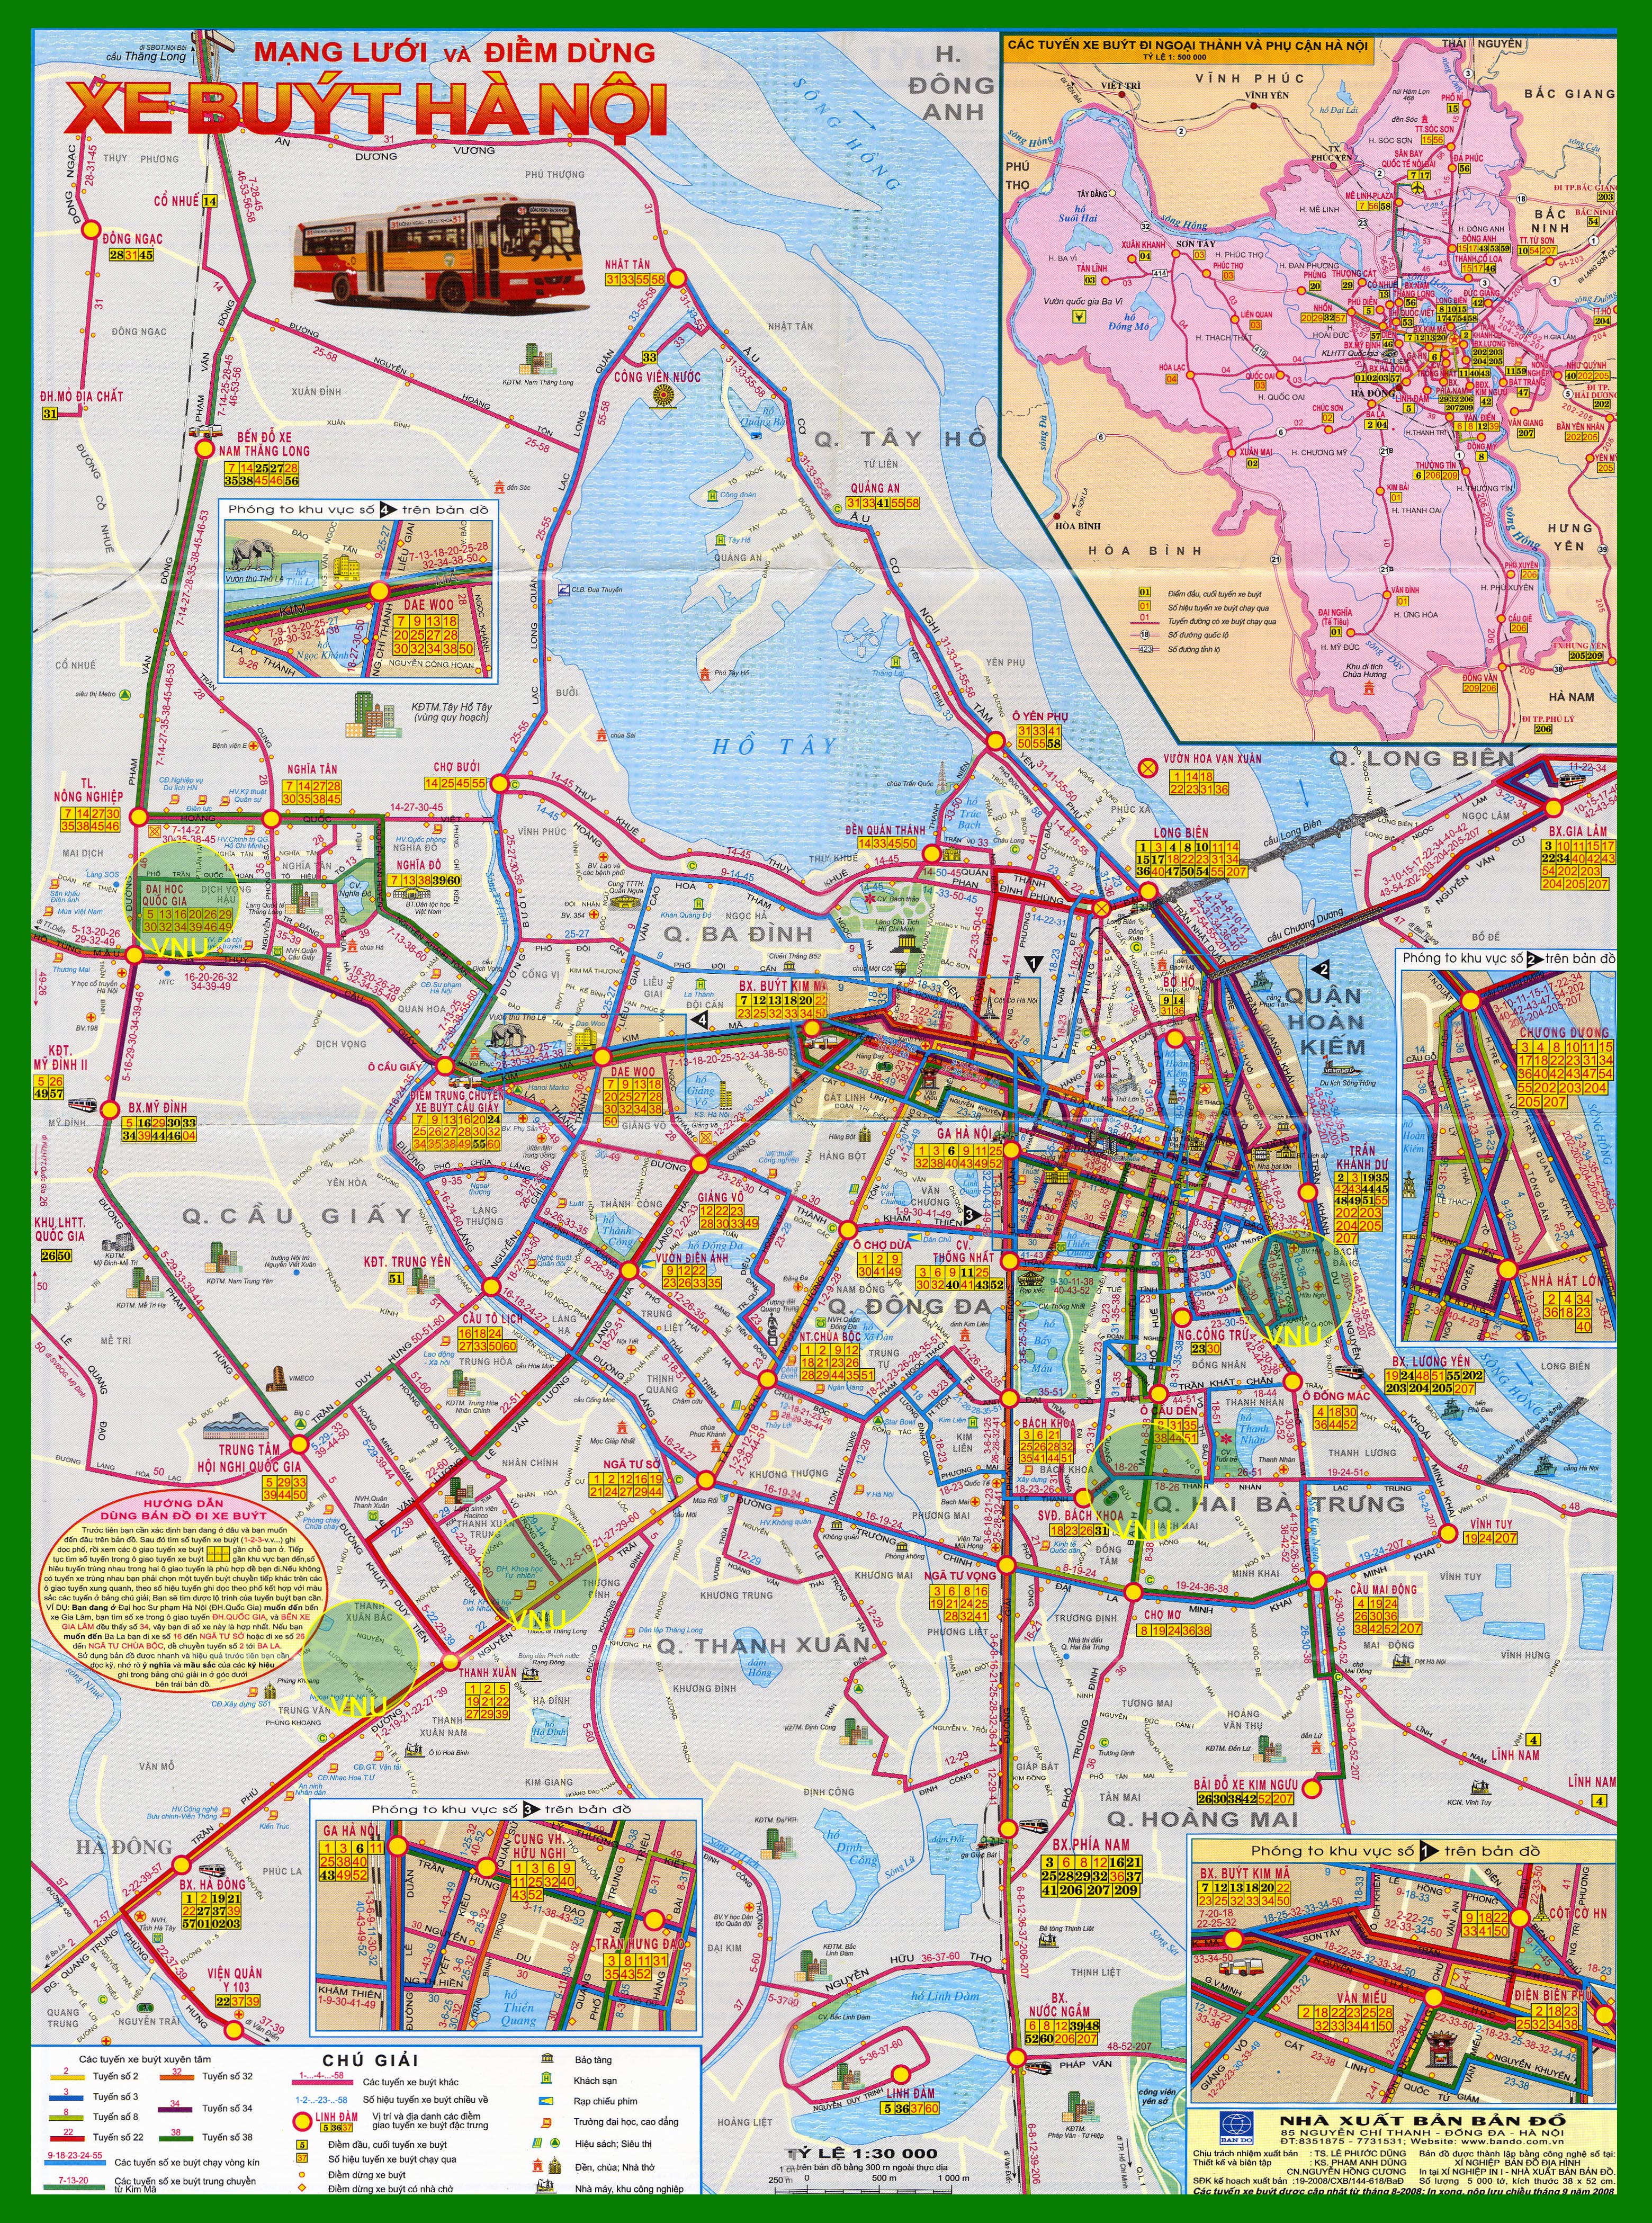 Bản đồ tuyến xe buýt Hà Nội 2024 sẽ bao gồm các tuyến buýt mới được áp dụng để hỗ trợ cho nhu cầu đi lại của người dân và du khách. Các tuyến bus mới này sẽ được thiết kế hiện đại, chất lượng, giúp đáp ứng các nhu cầu di chuyển khác nhau của mọi người.